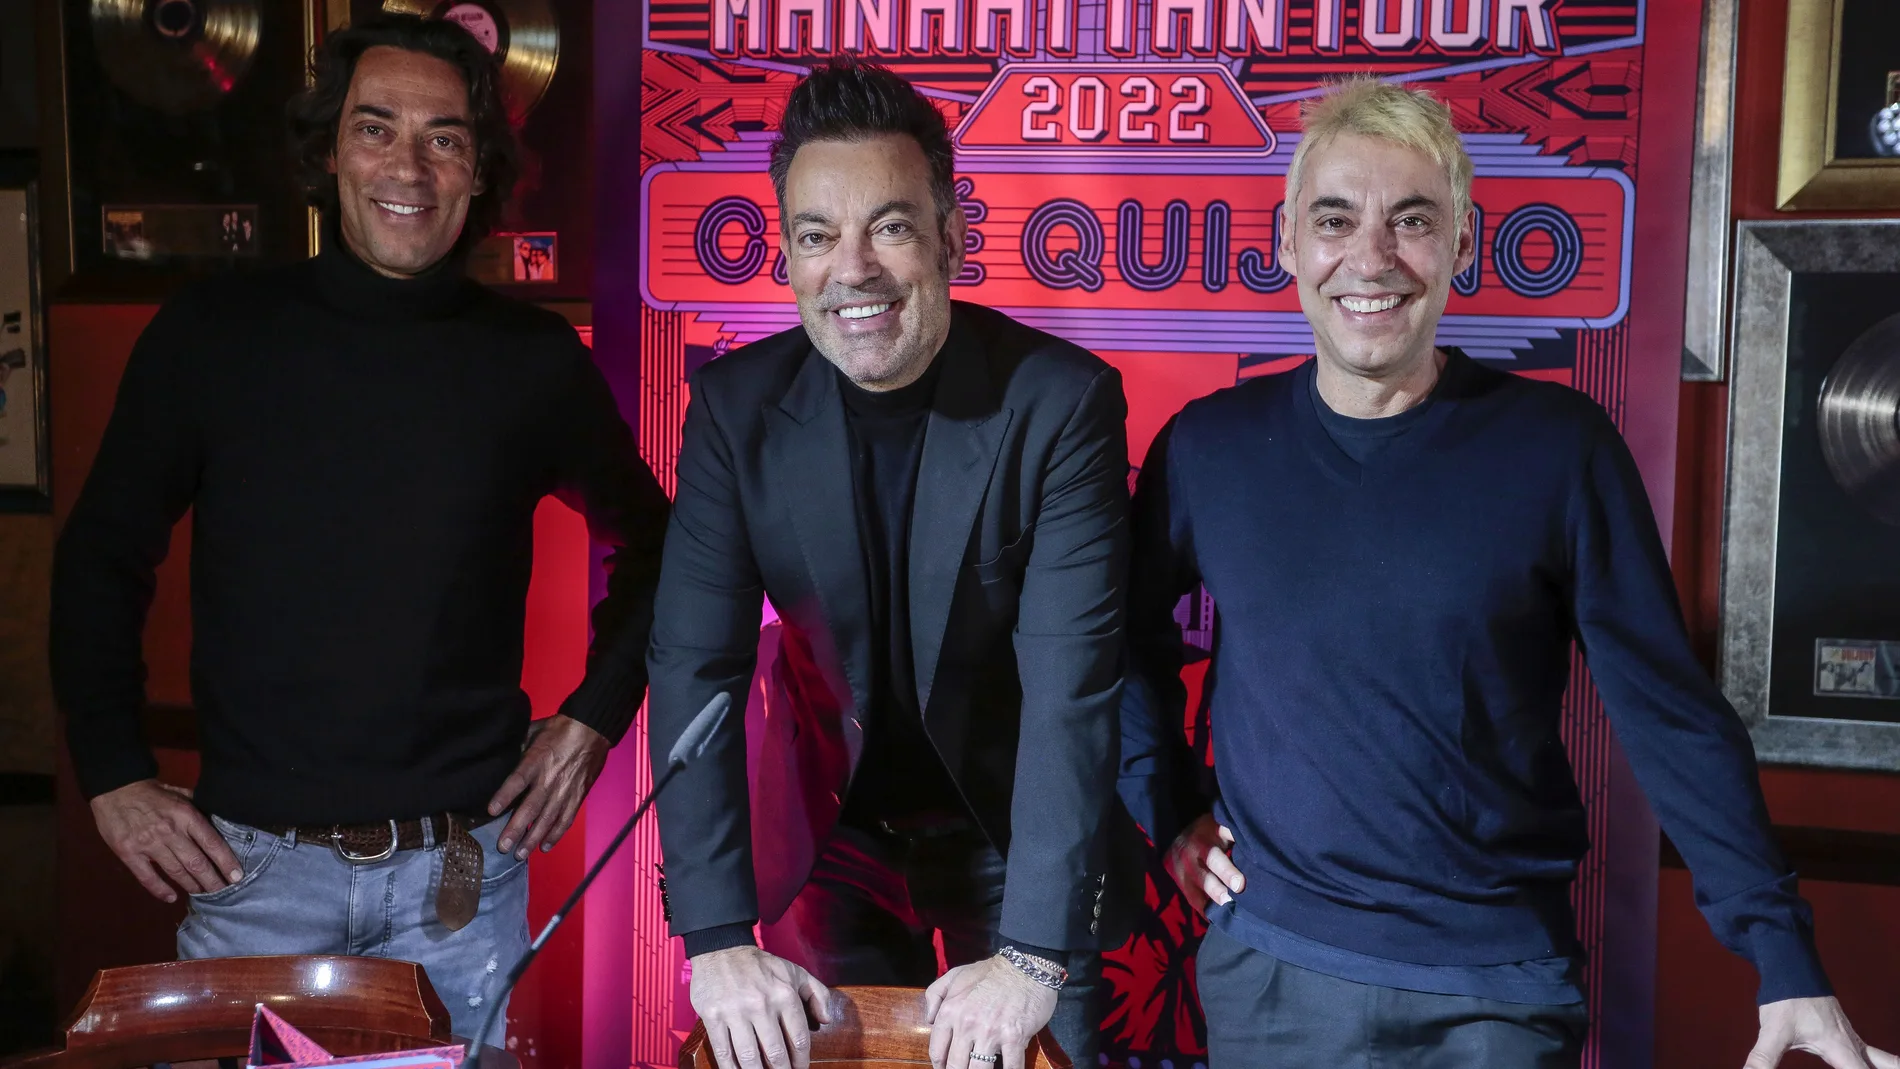 El grupo leonés Café Quijano, presenta su nuevo disco 'Manhattan'. En la imagen, Óscar, Manuel y Raúl durante la presentación